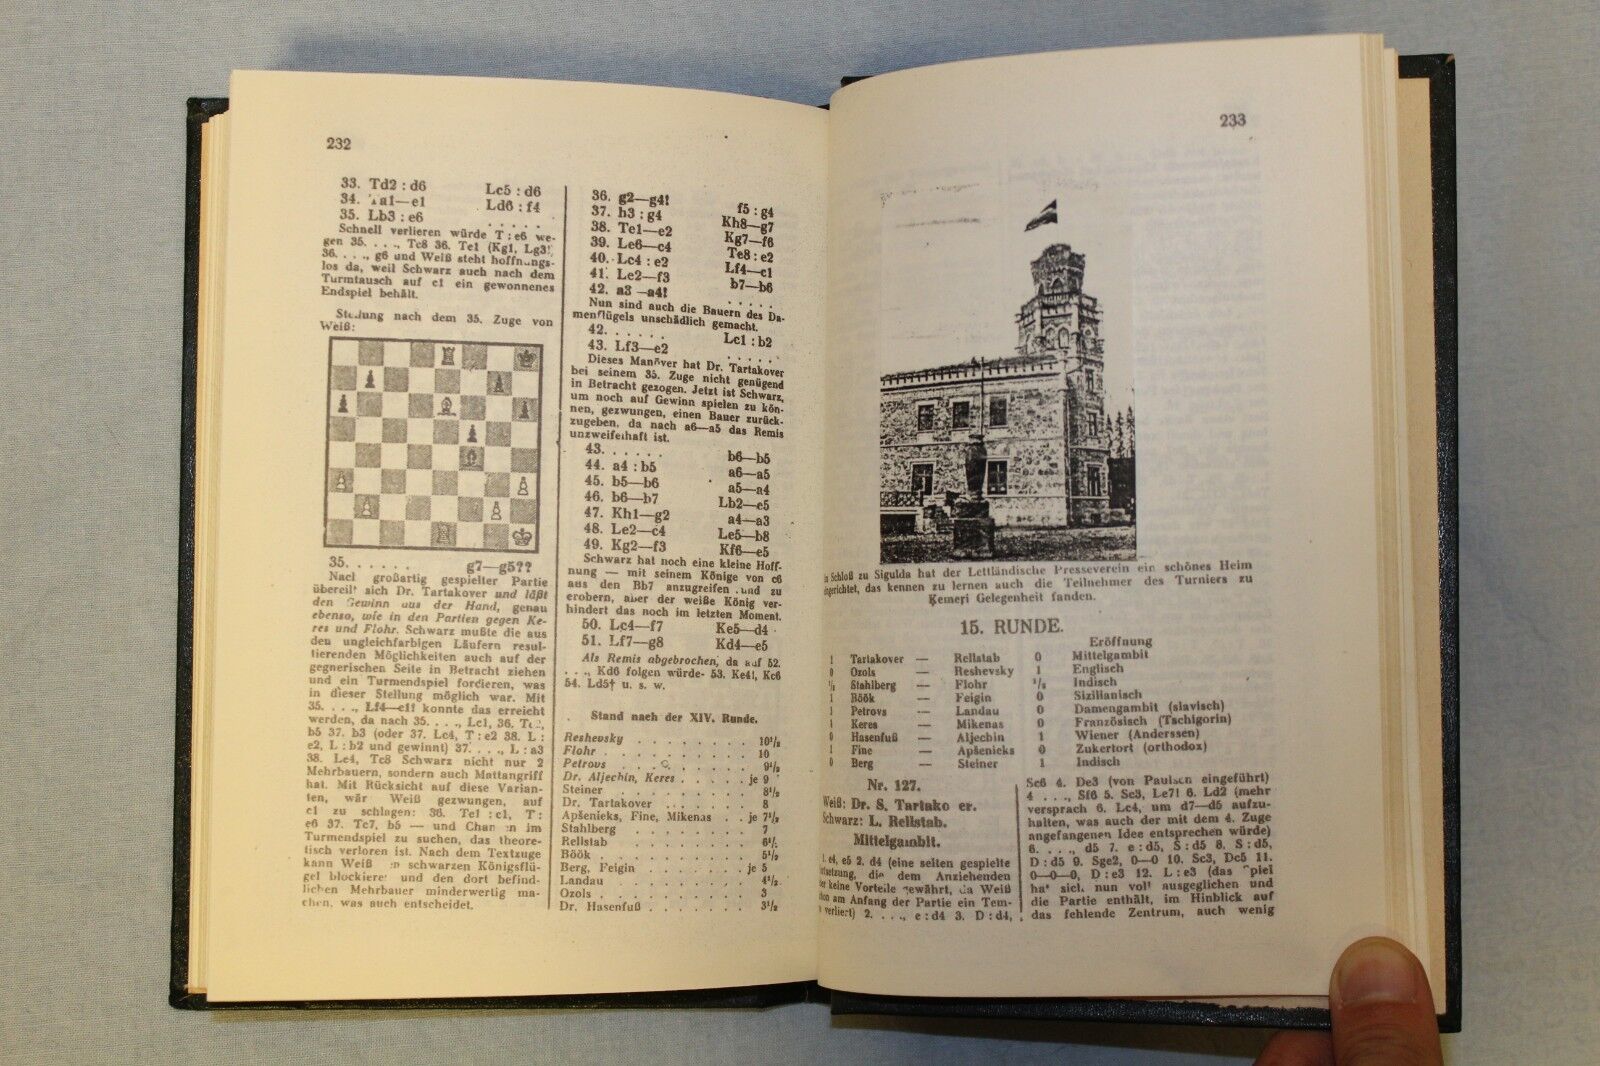 11314.German Chess Book: Schachmeisterturnier zu Kemeri in Lettland 1937